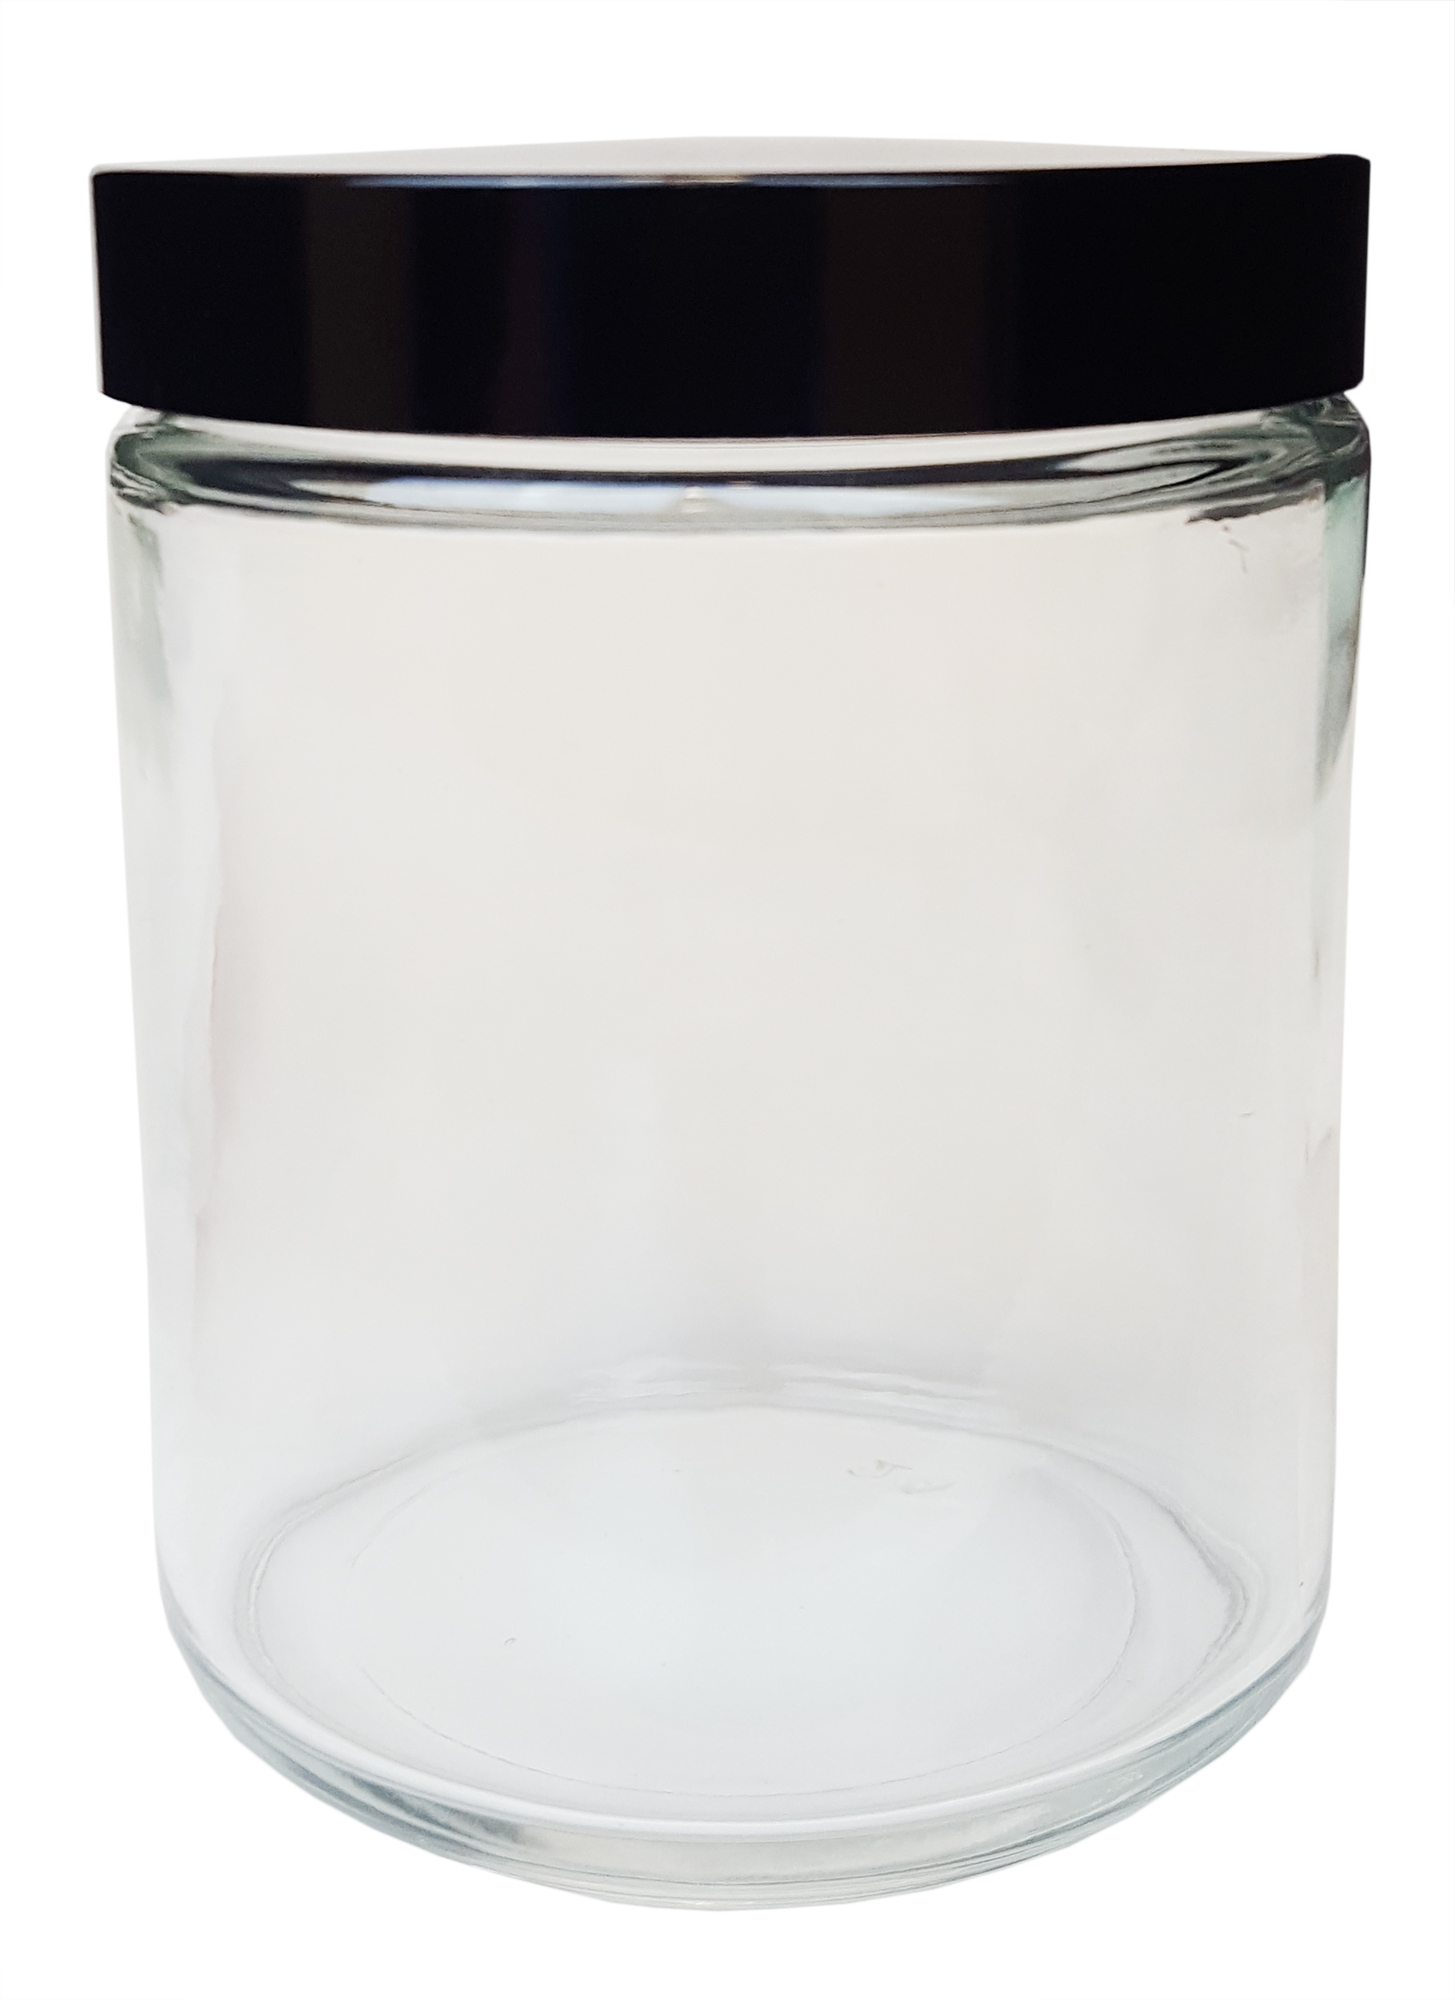 Glass Specimen Jars with Glass Lid